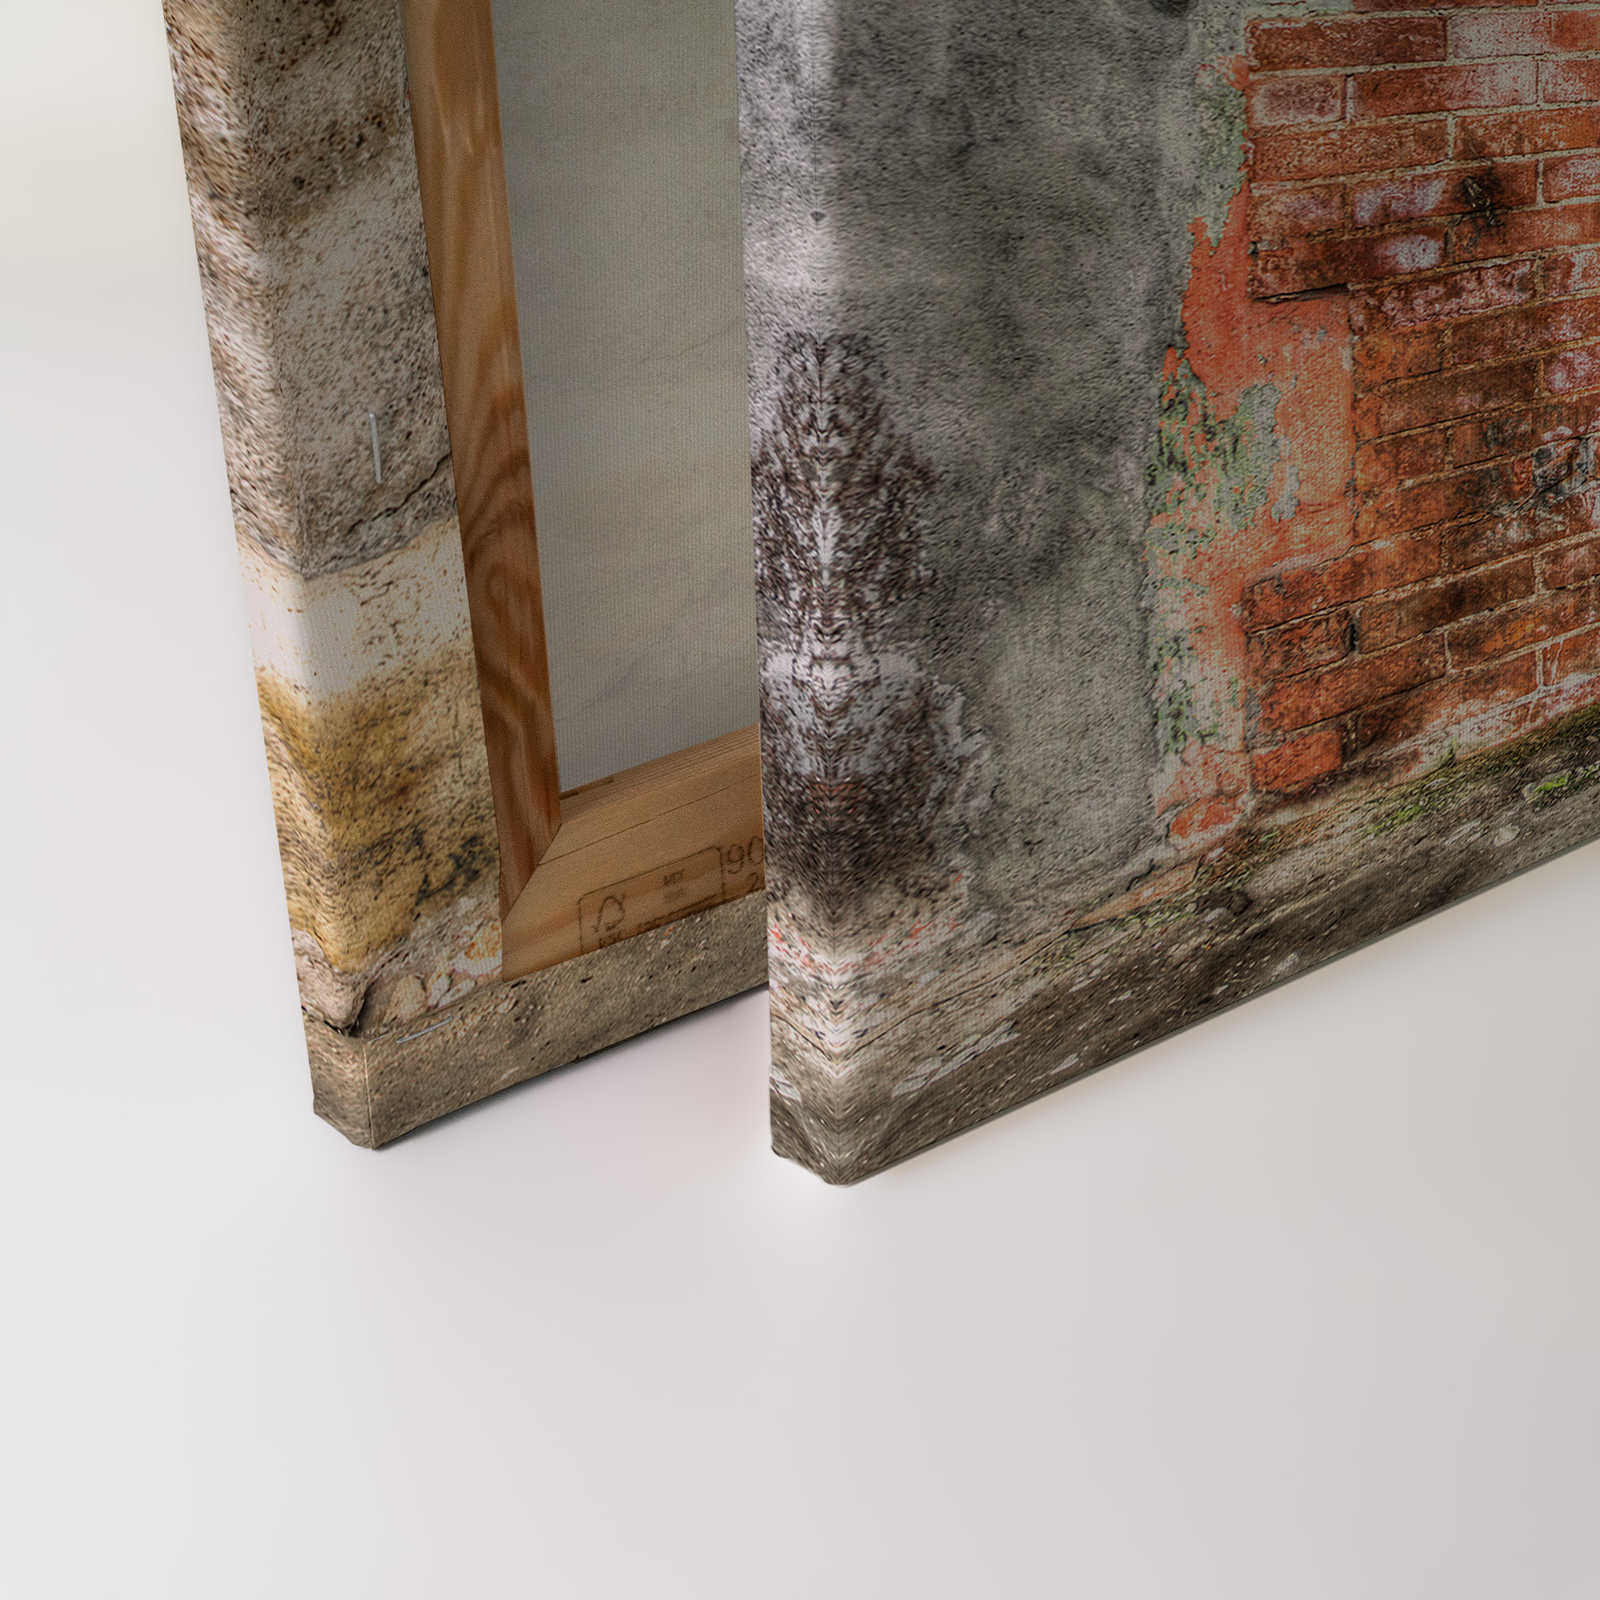             Toile mur de pierre avec portes de toilettes vintage | gris, orange, beige - 0,90 m x 0,60 m
        